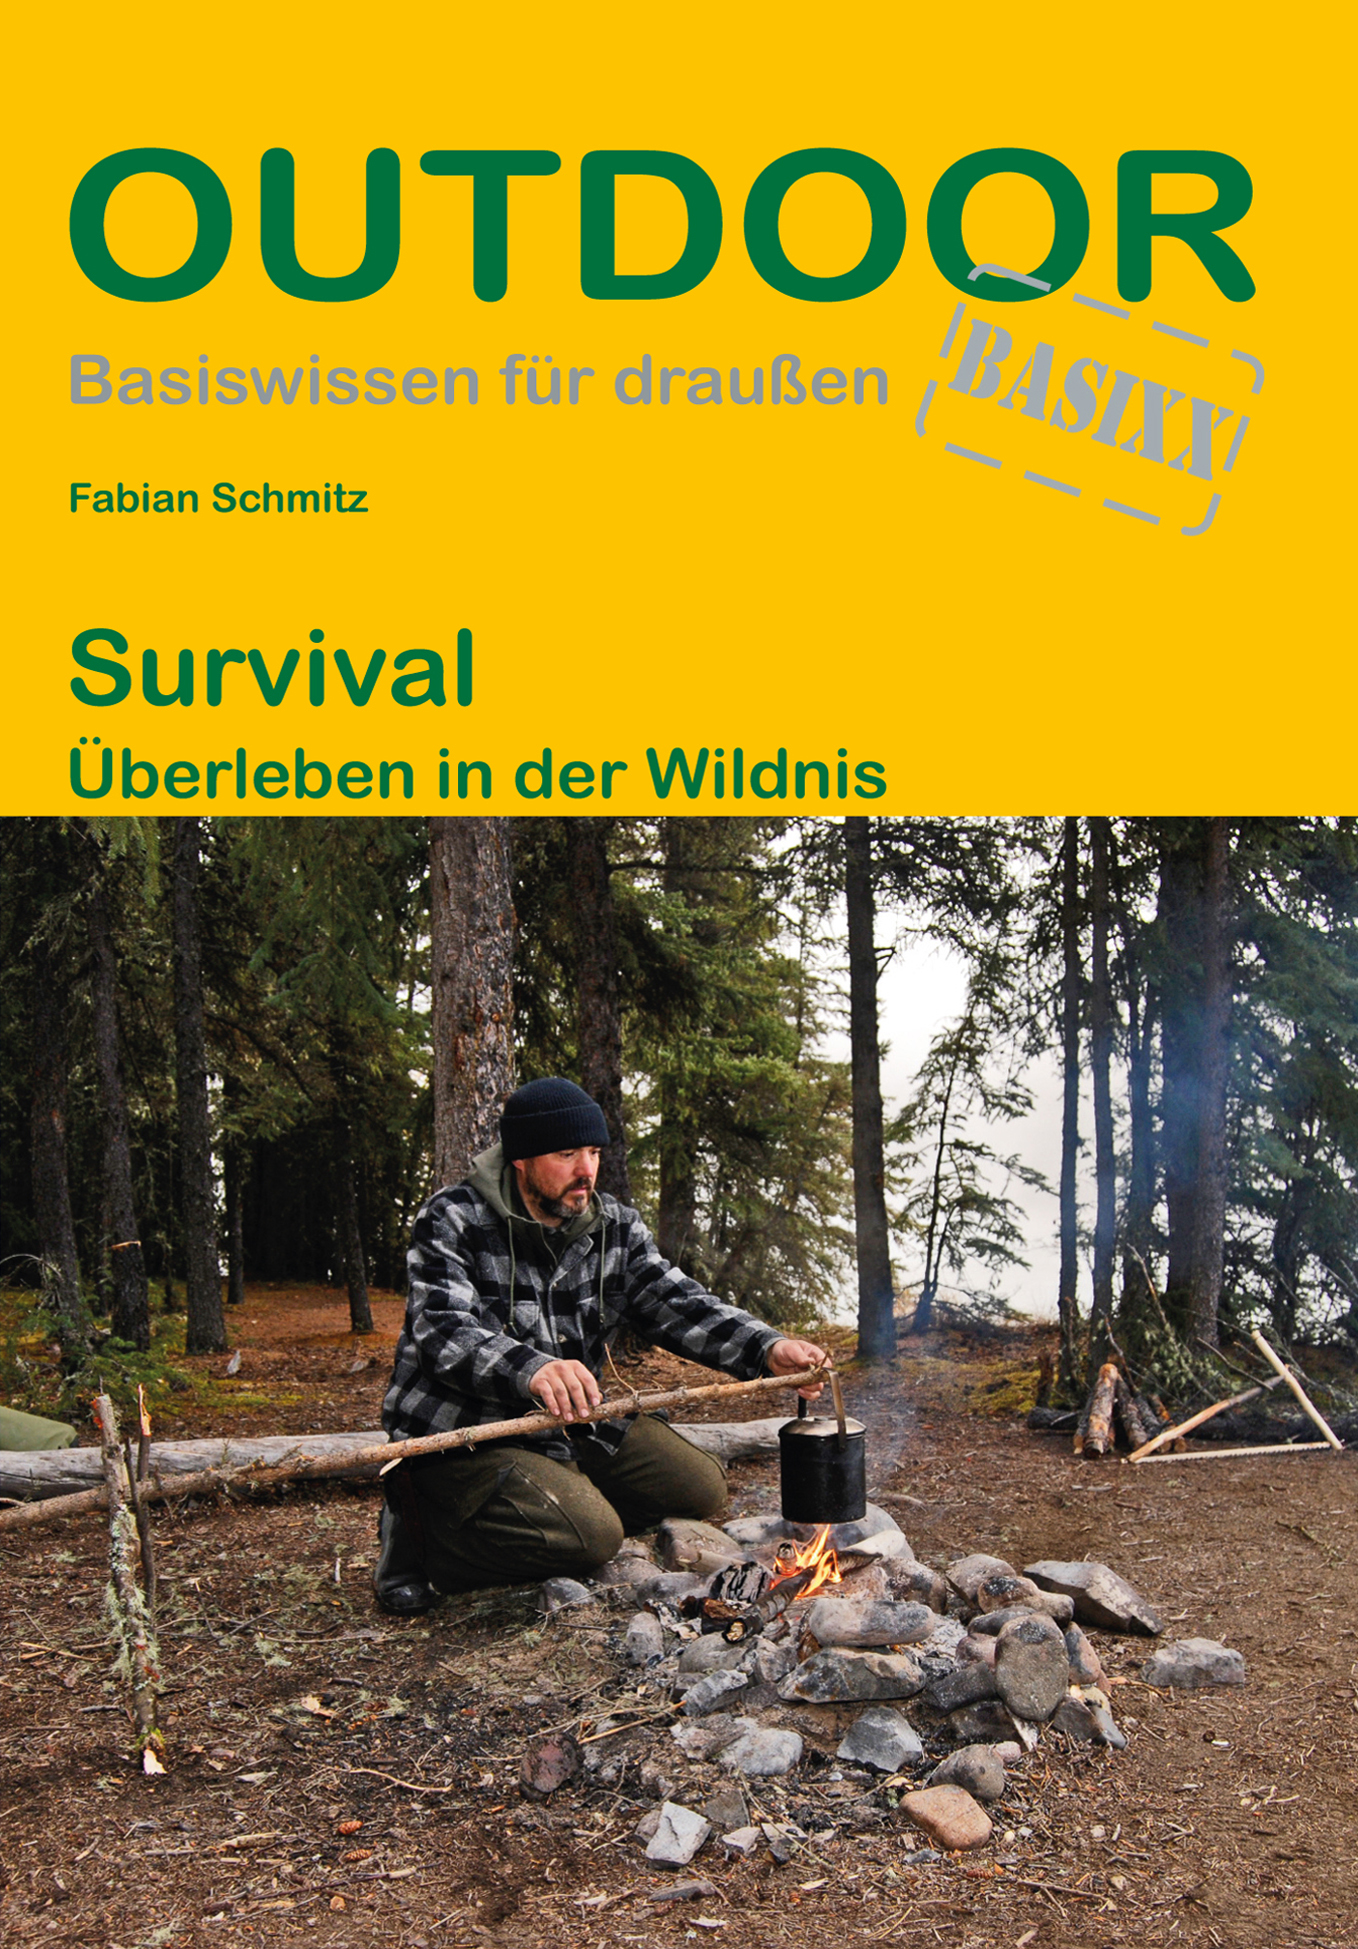 Conrad Stein Verlag Survival OutdoorHandbuch Band 463